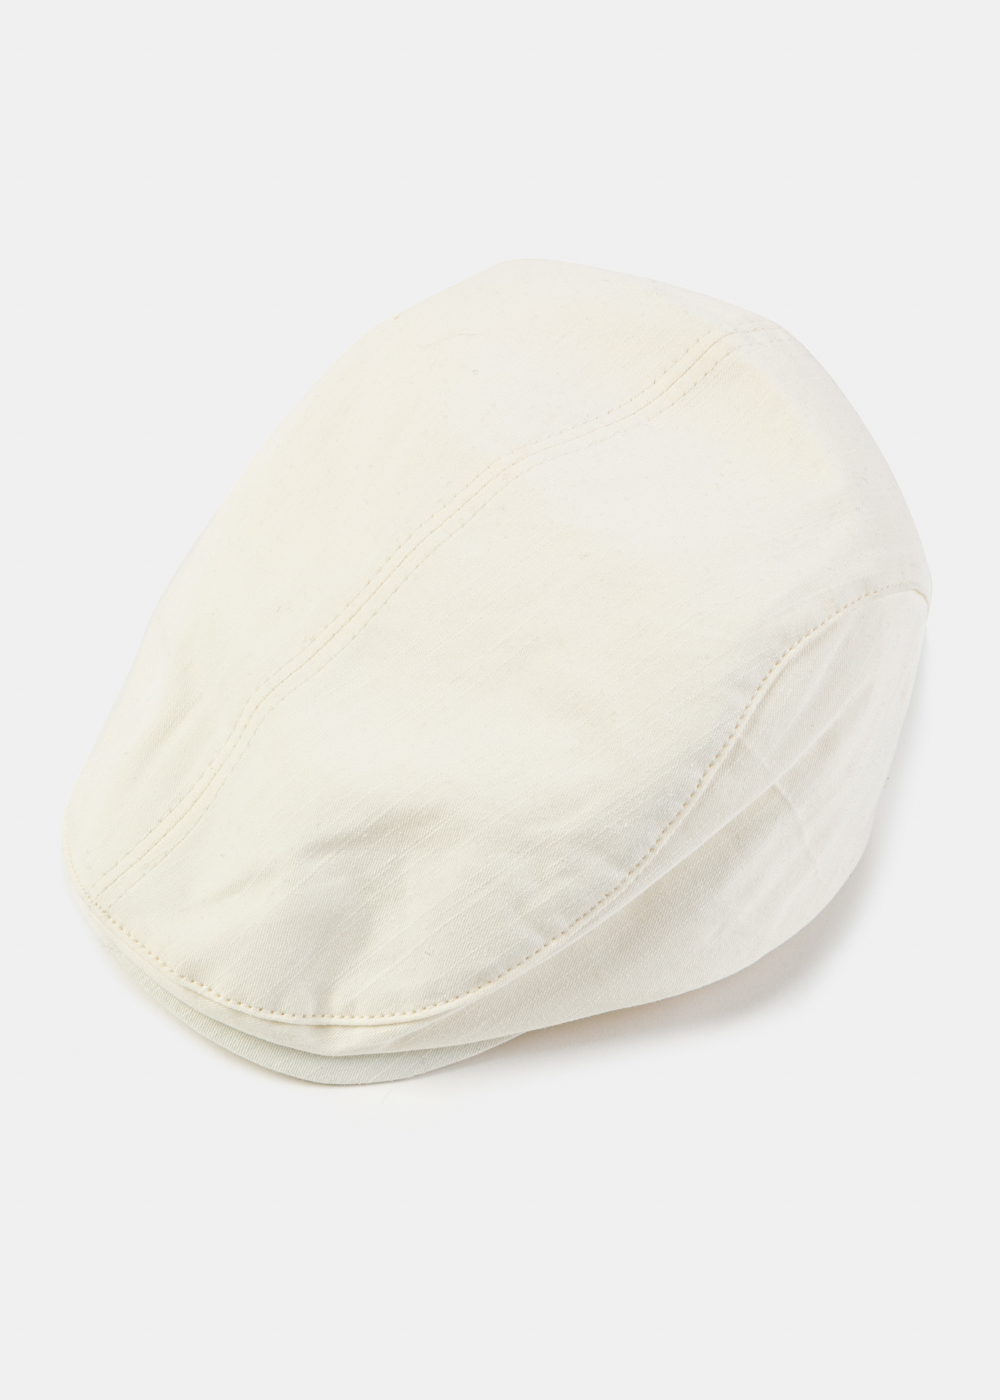 Cream Cotton Men's Cap